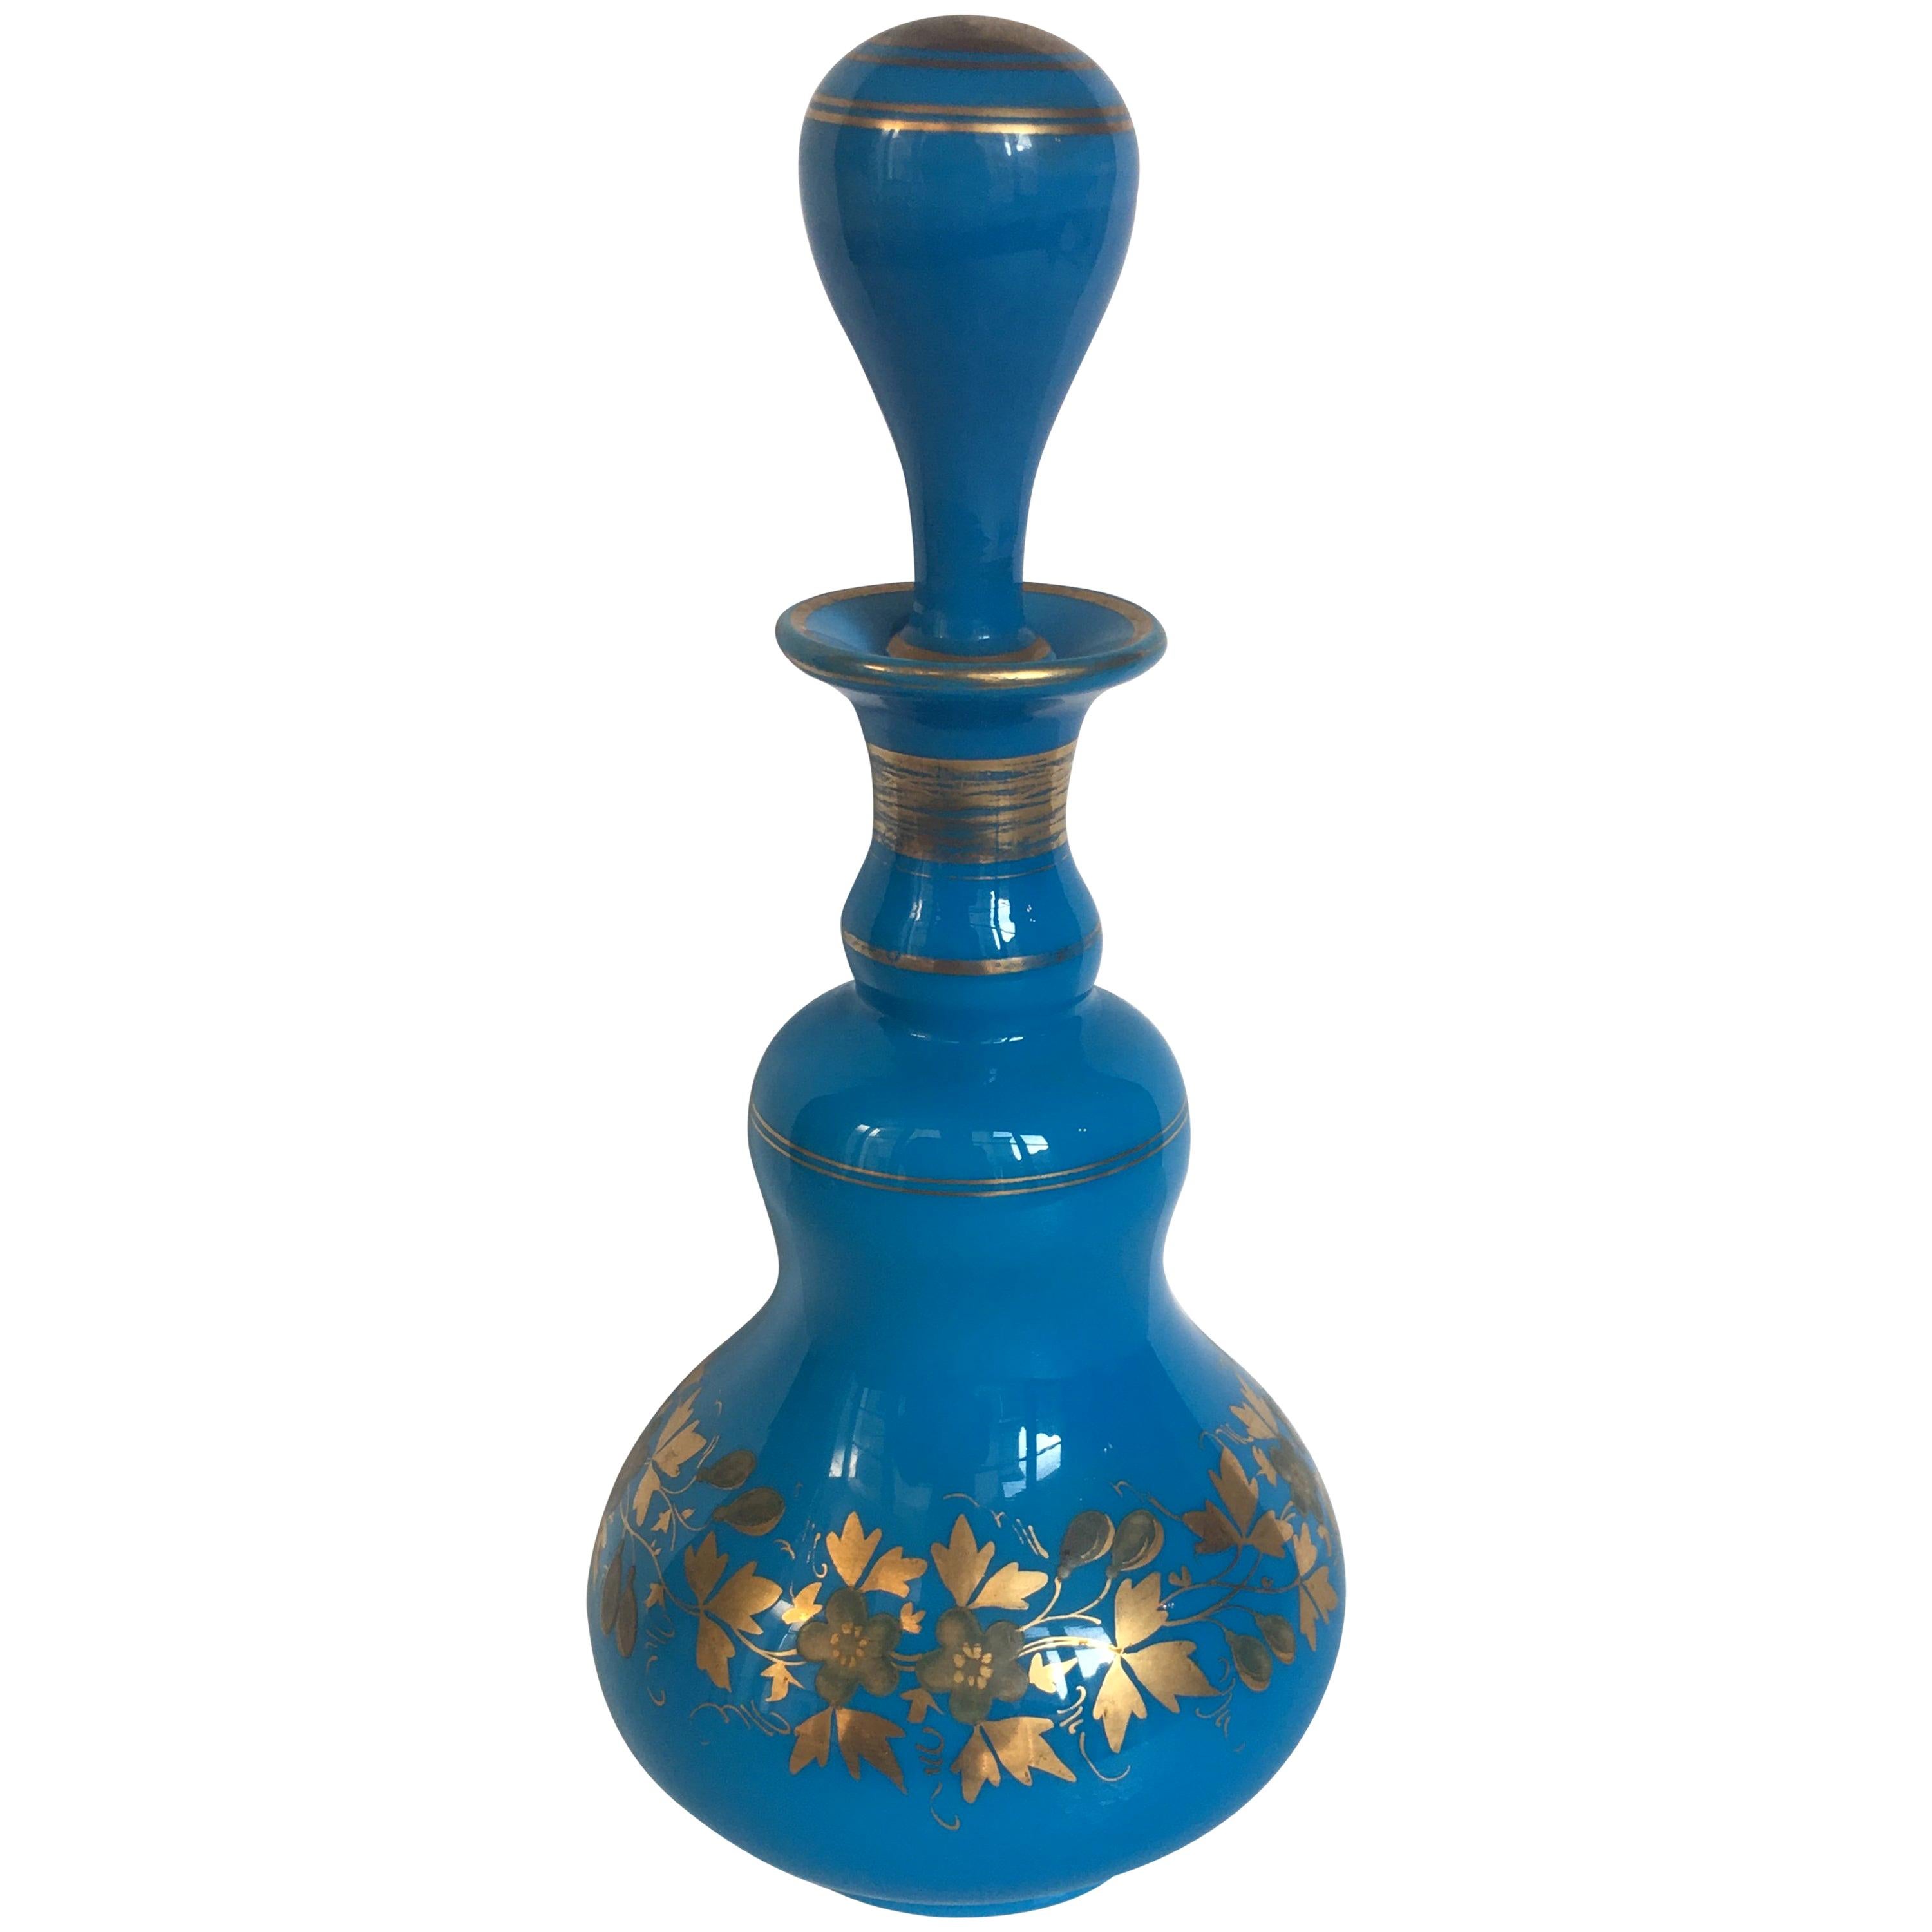 Baccarat Blue Opaline Perfume Bottle with Top Napoleon III Era